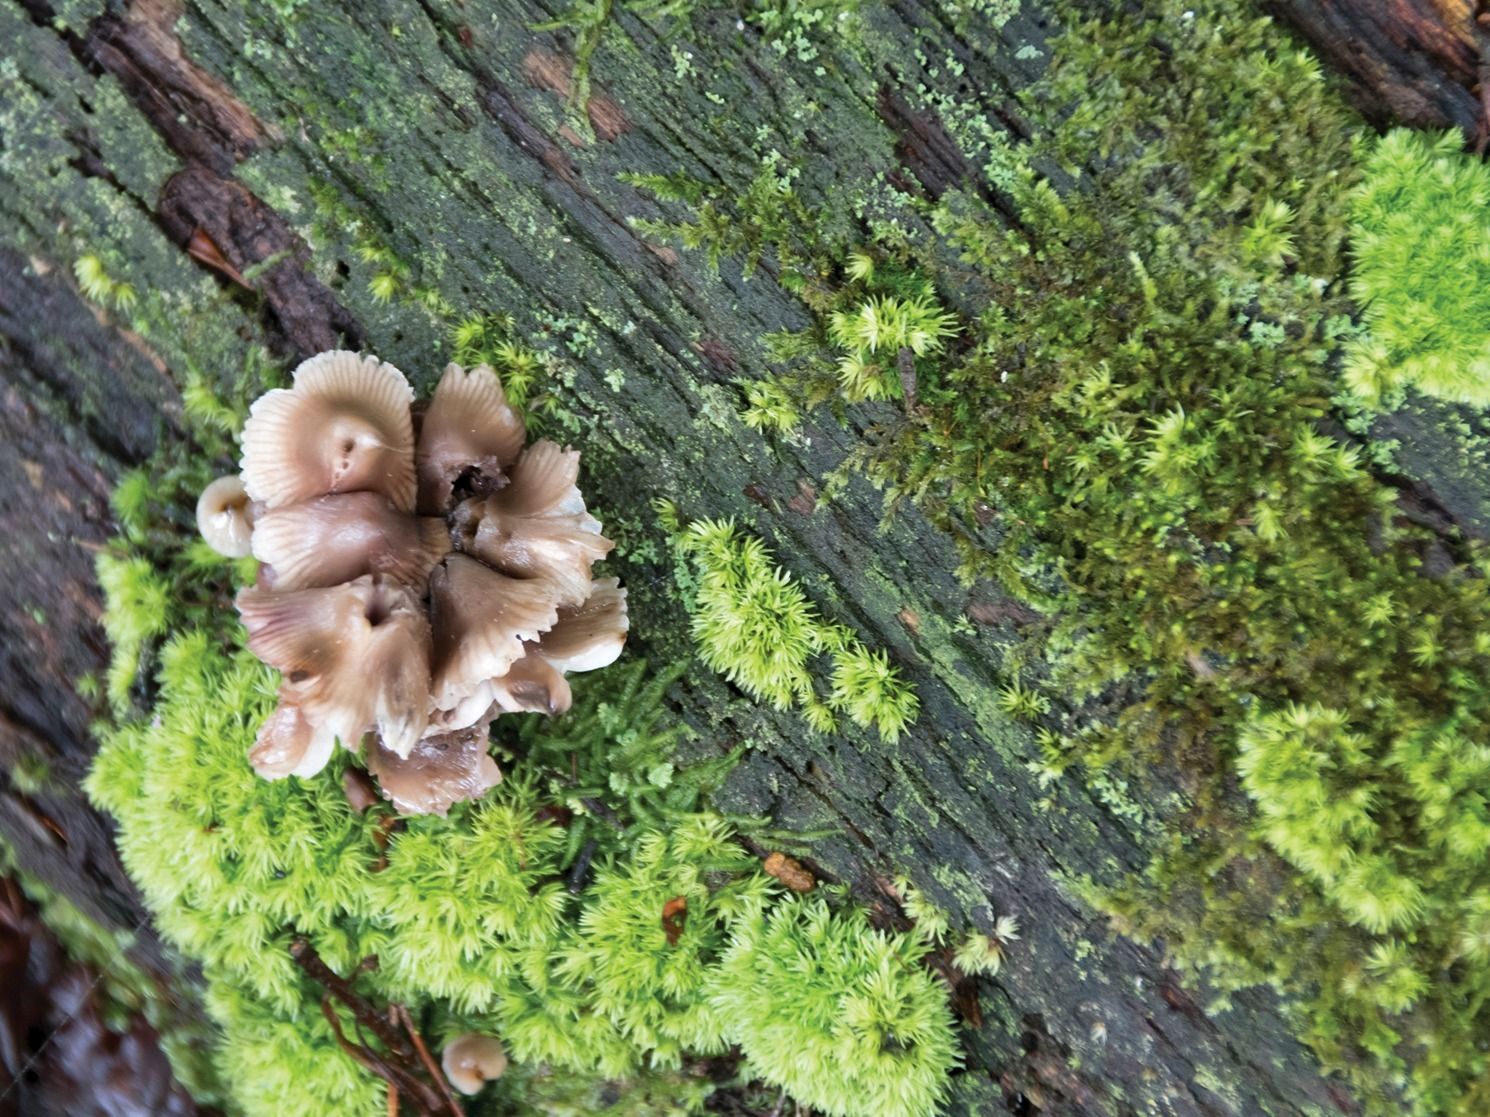 Fungi on tree bark with moss